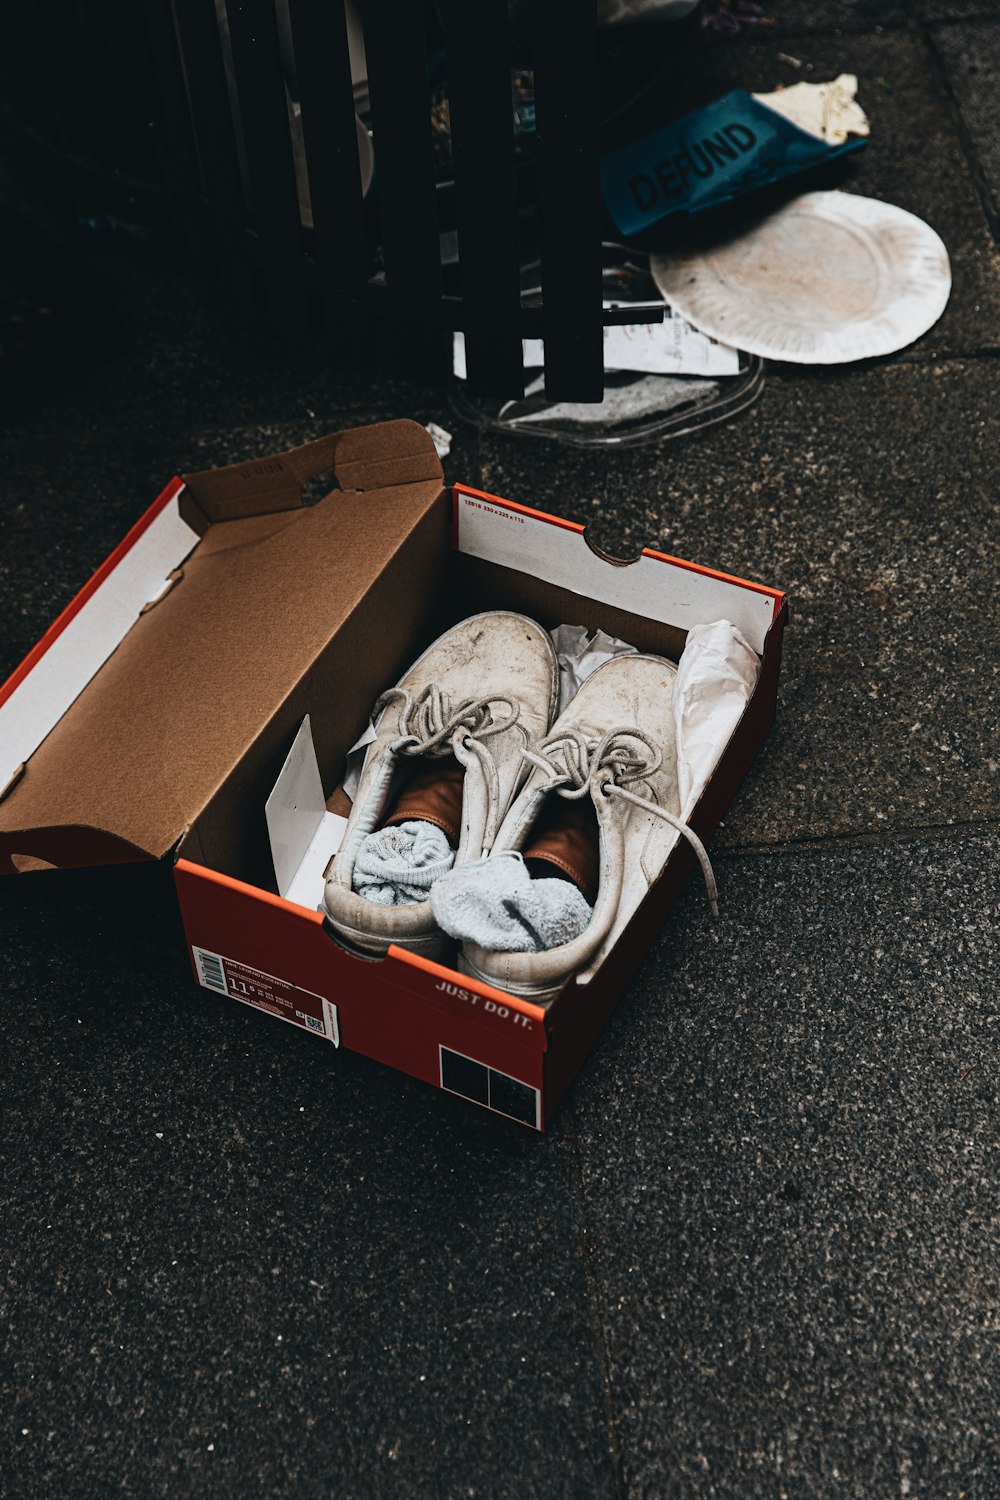 Zapatillas deportivas Nike blancas y negras en caja de cartón marrón